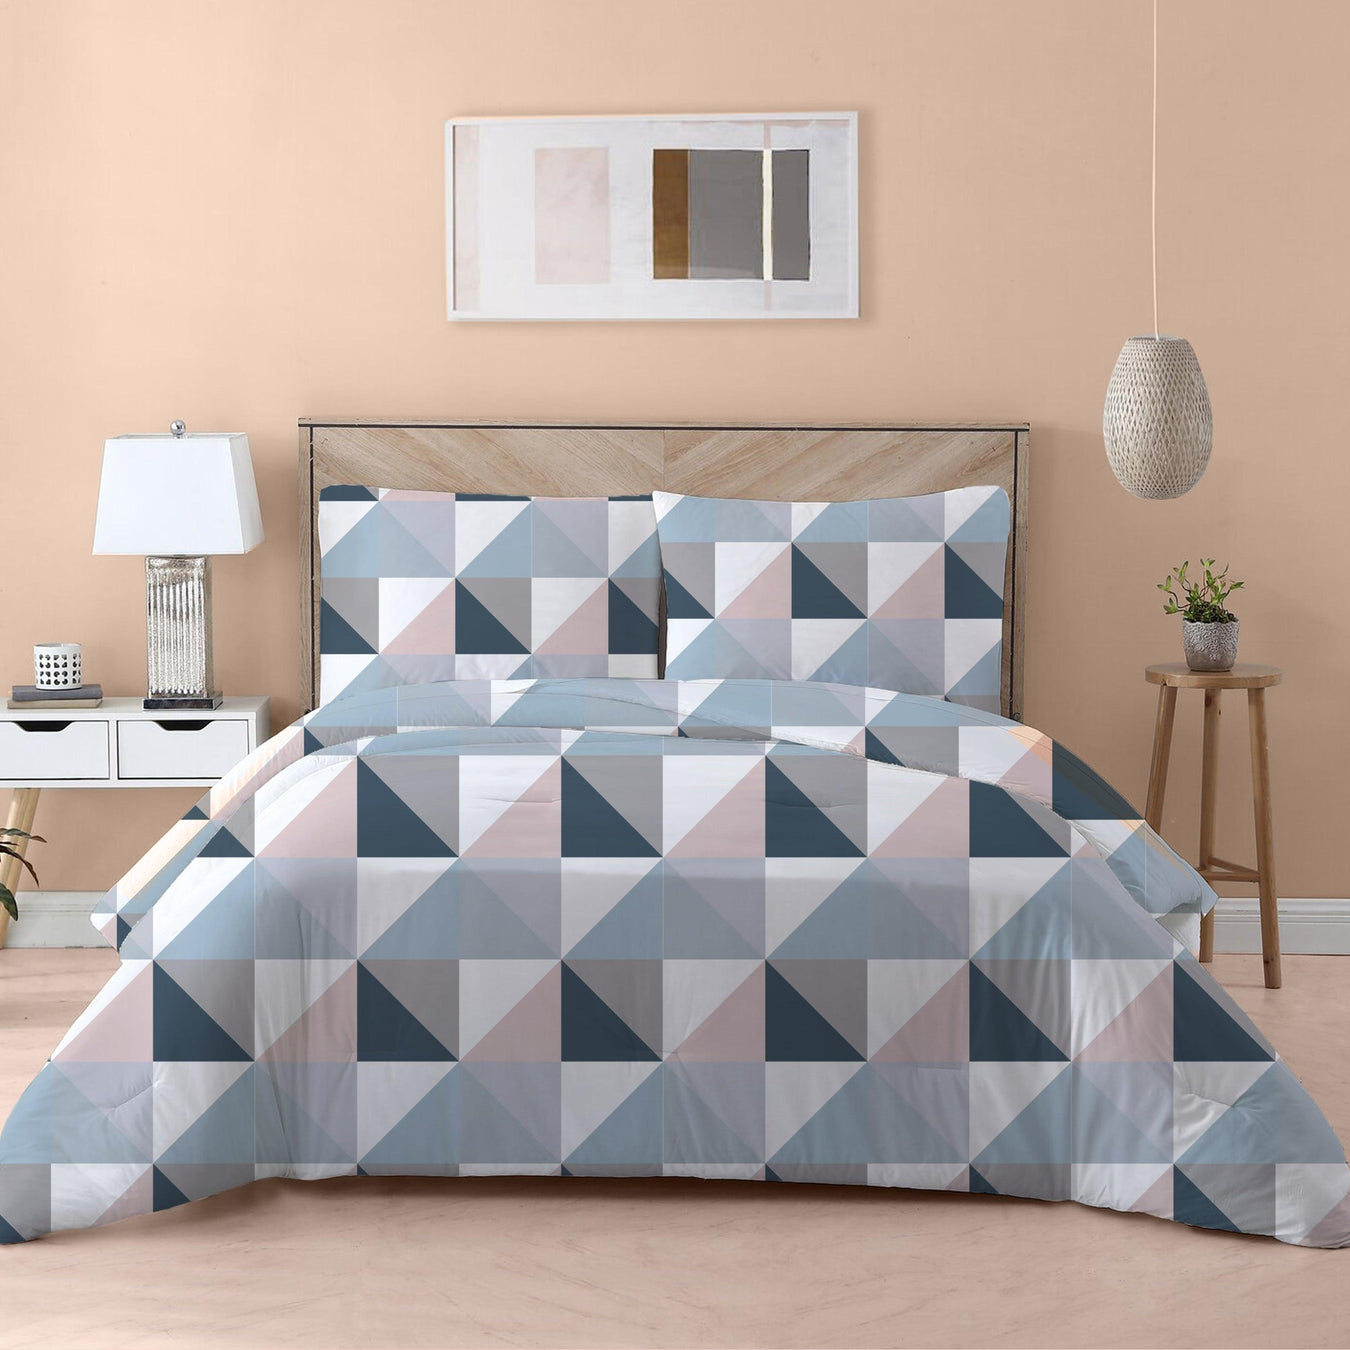 4 Piece Comforter Sets - Cotton Home